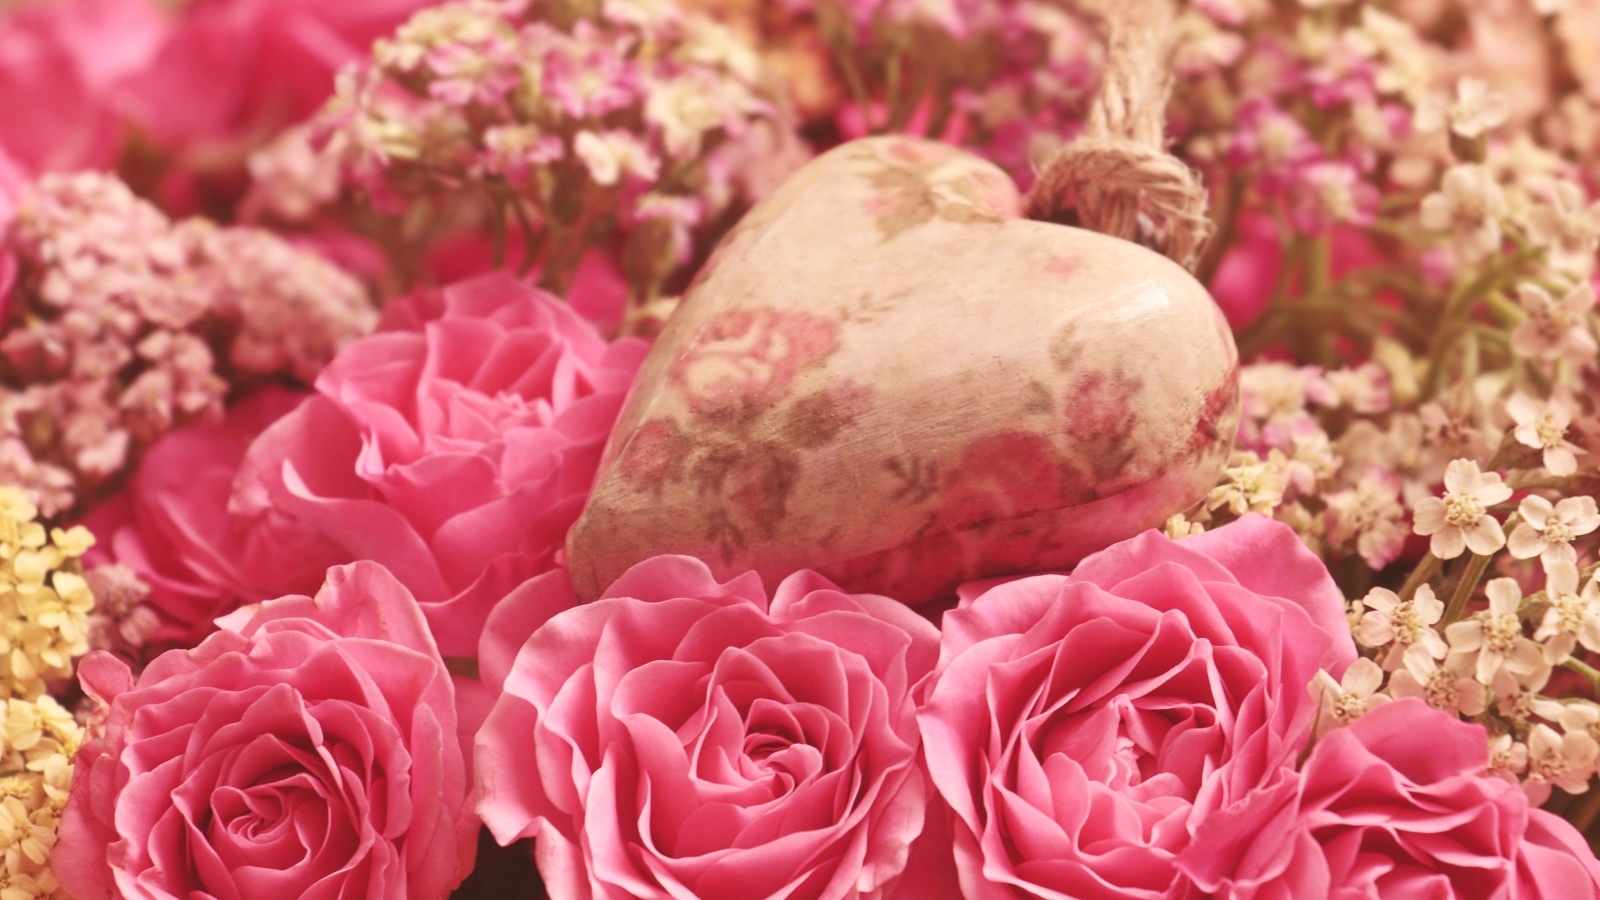 Сердце лежит на цветах розовой розы